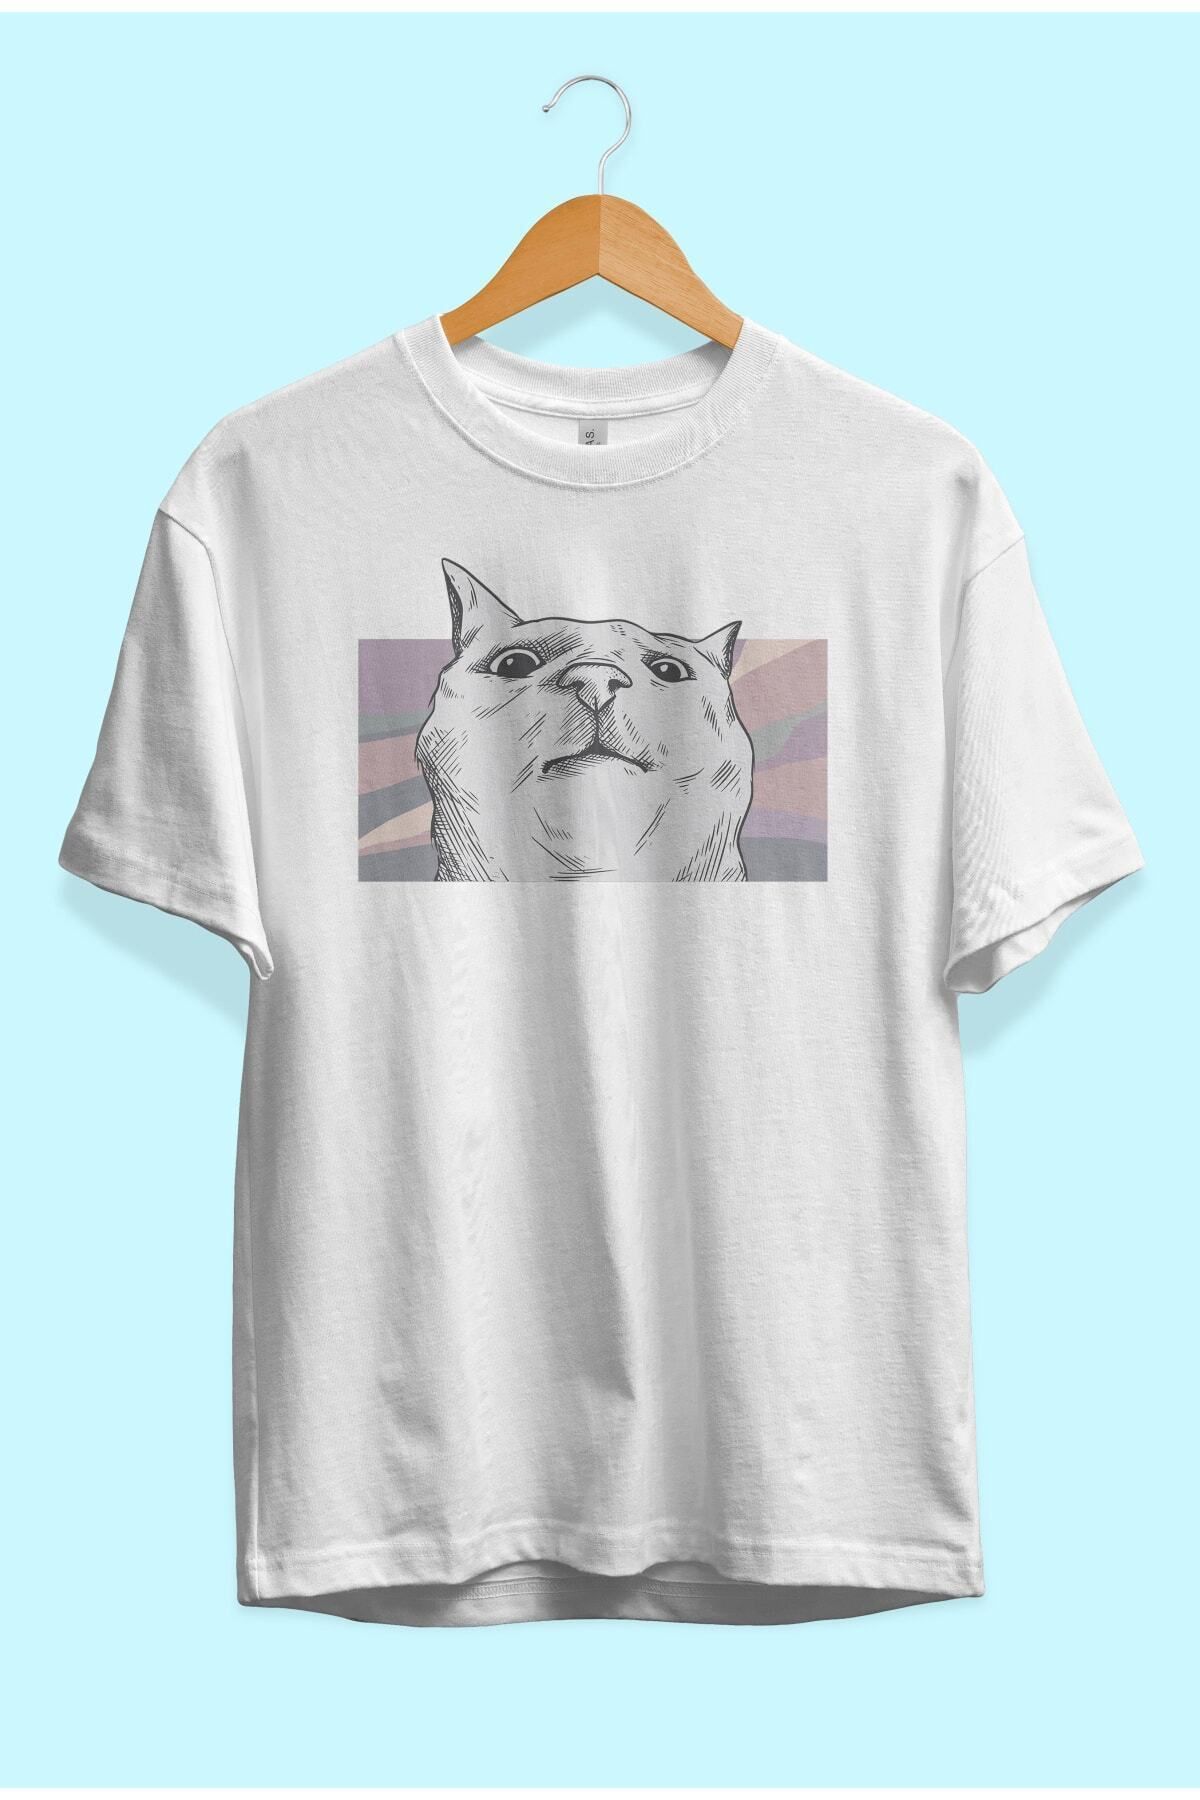 ZOKAWEAR Bol Kalıp Komik Kedi Tasarım Baskılı Tişört